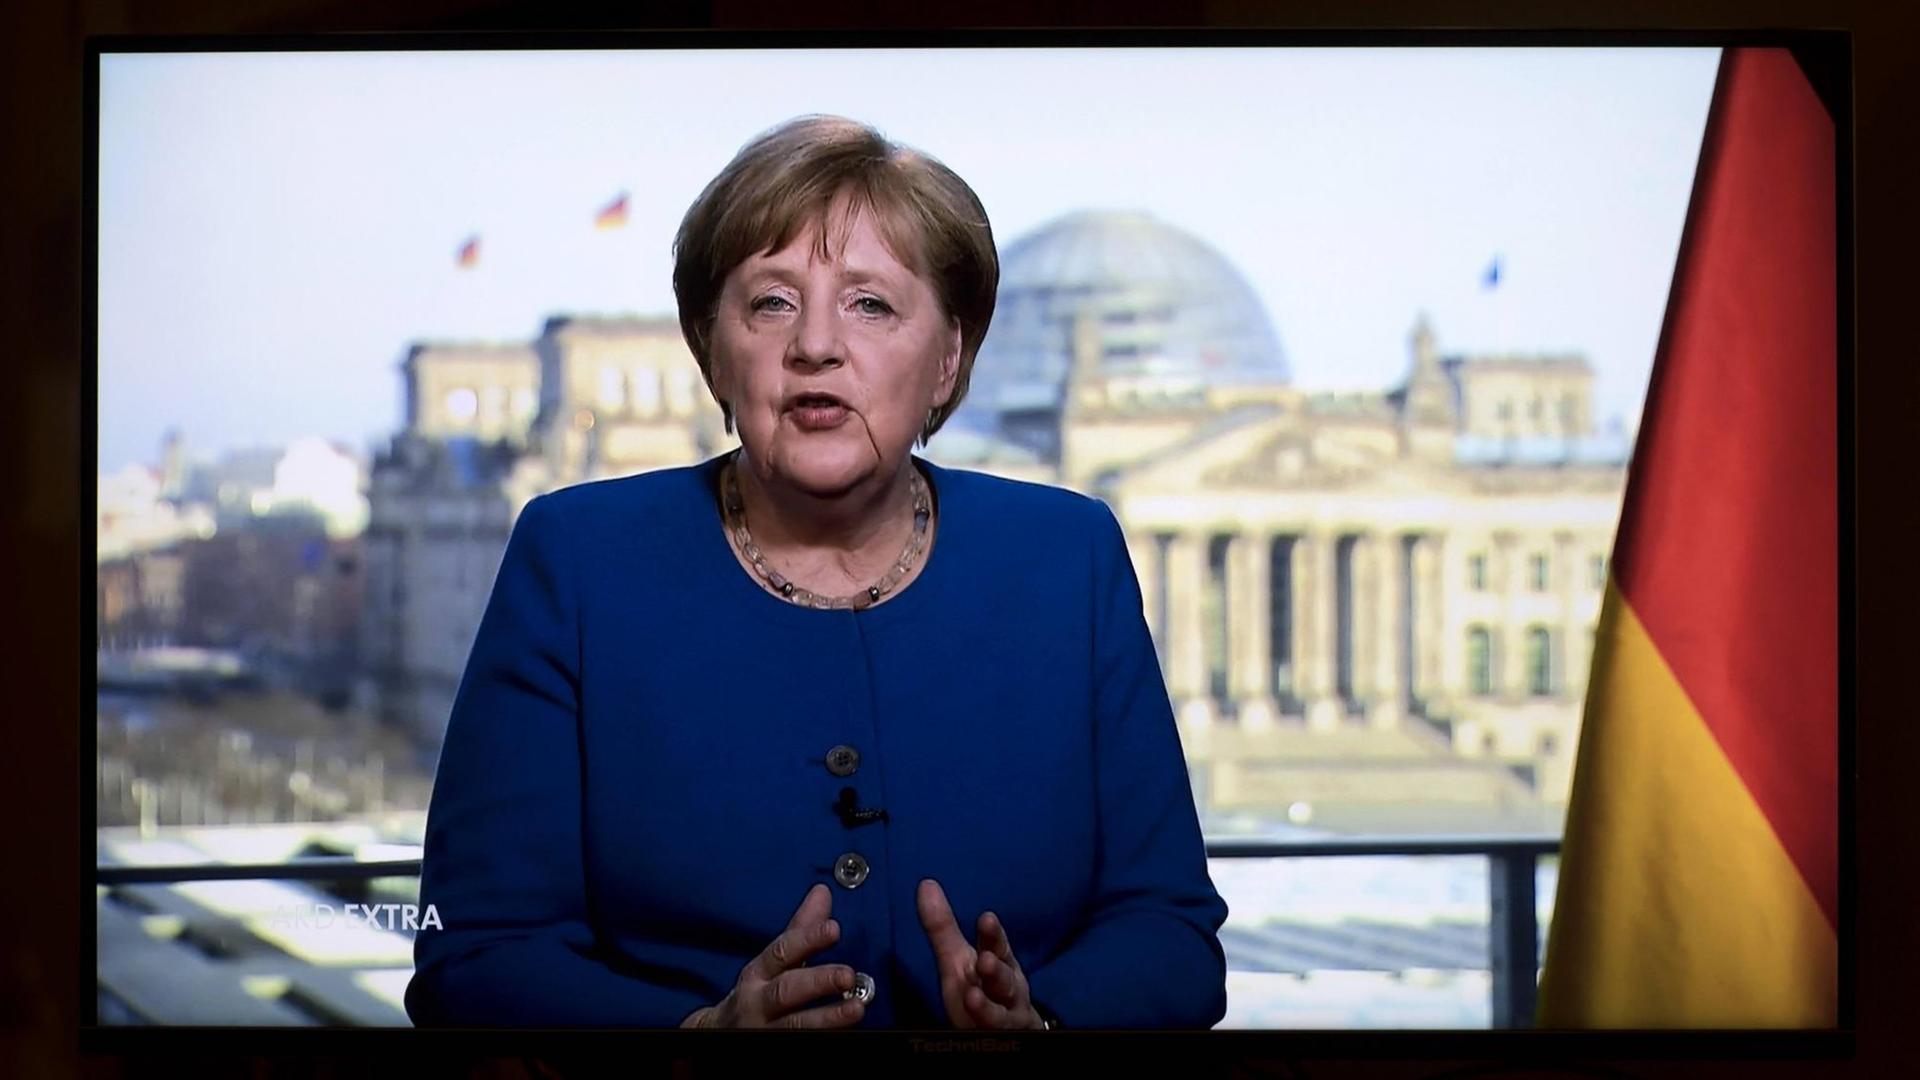 Angela Merkel ist im Fernsehen zu sehen. Zum ersten Mal in ihrer 15-jährigen Amtszeit wendet sie sich außerhalb der jährlichen Neujahrsansprache direkt an die Bevölkerung